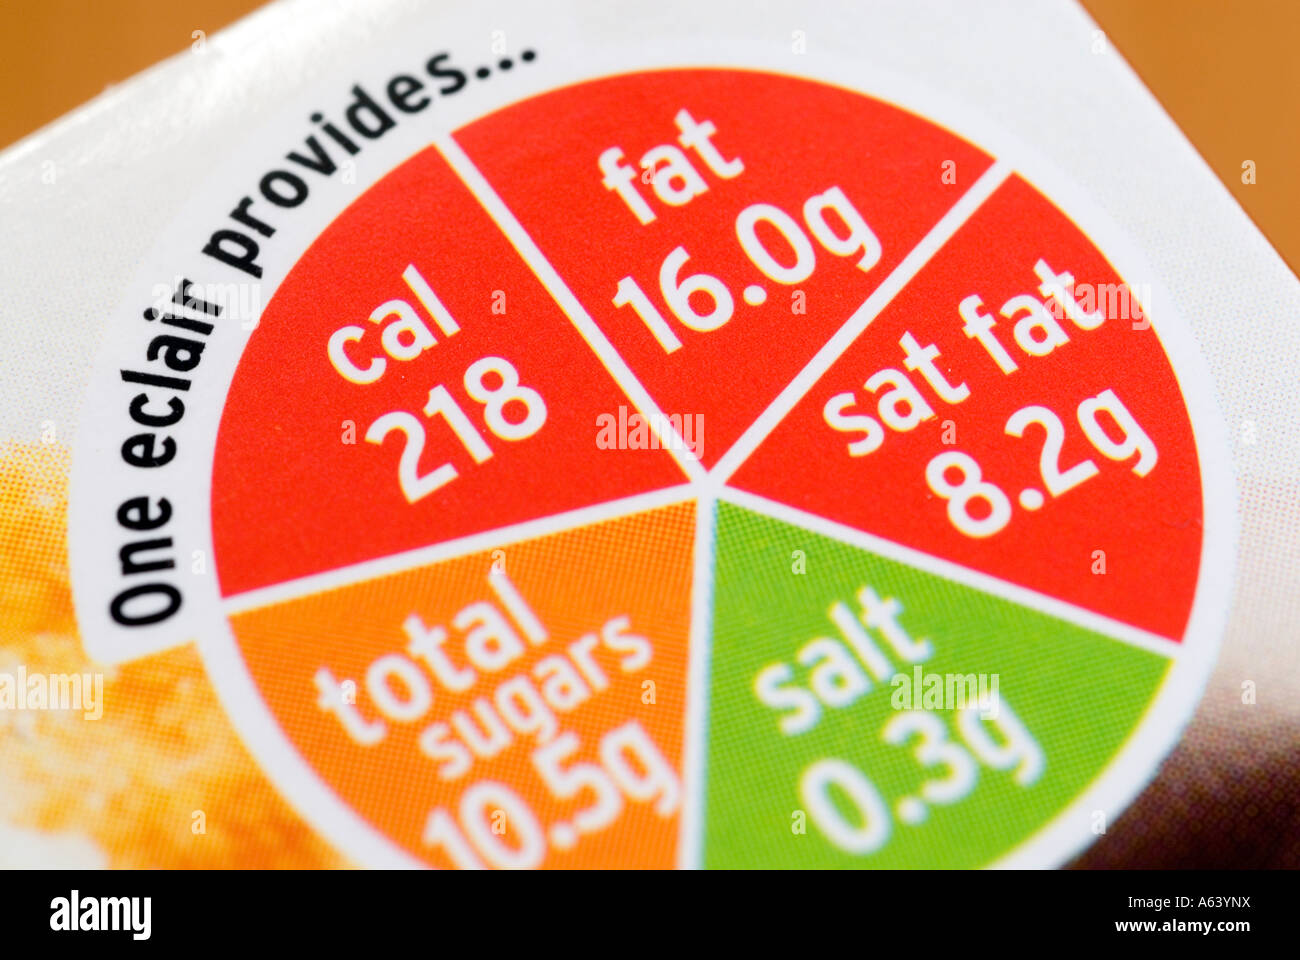 Supermarkt Lebensmittel Ernährung Etikette auf Karton von Sainsbury Eclairs, UK Stockfoto